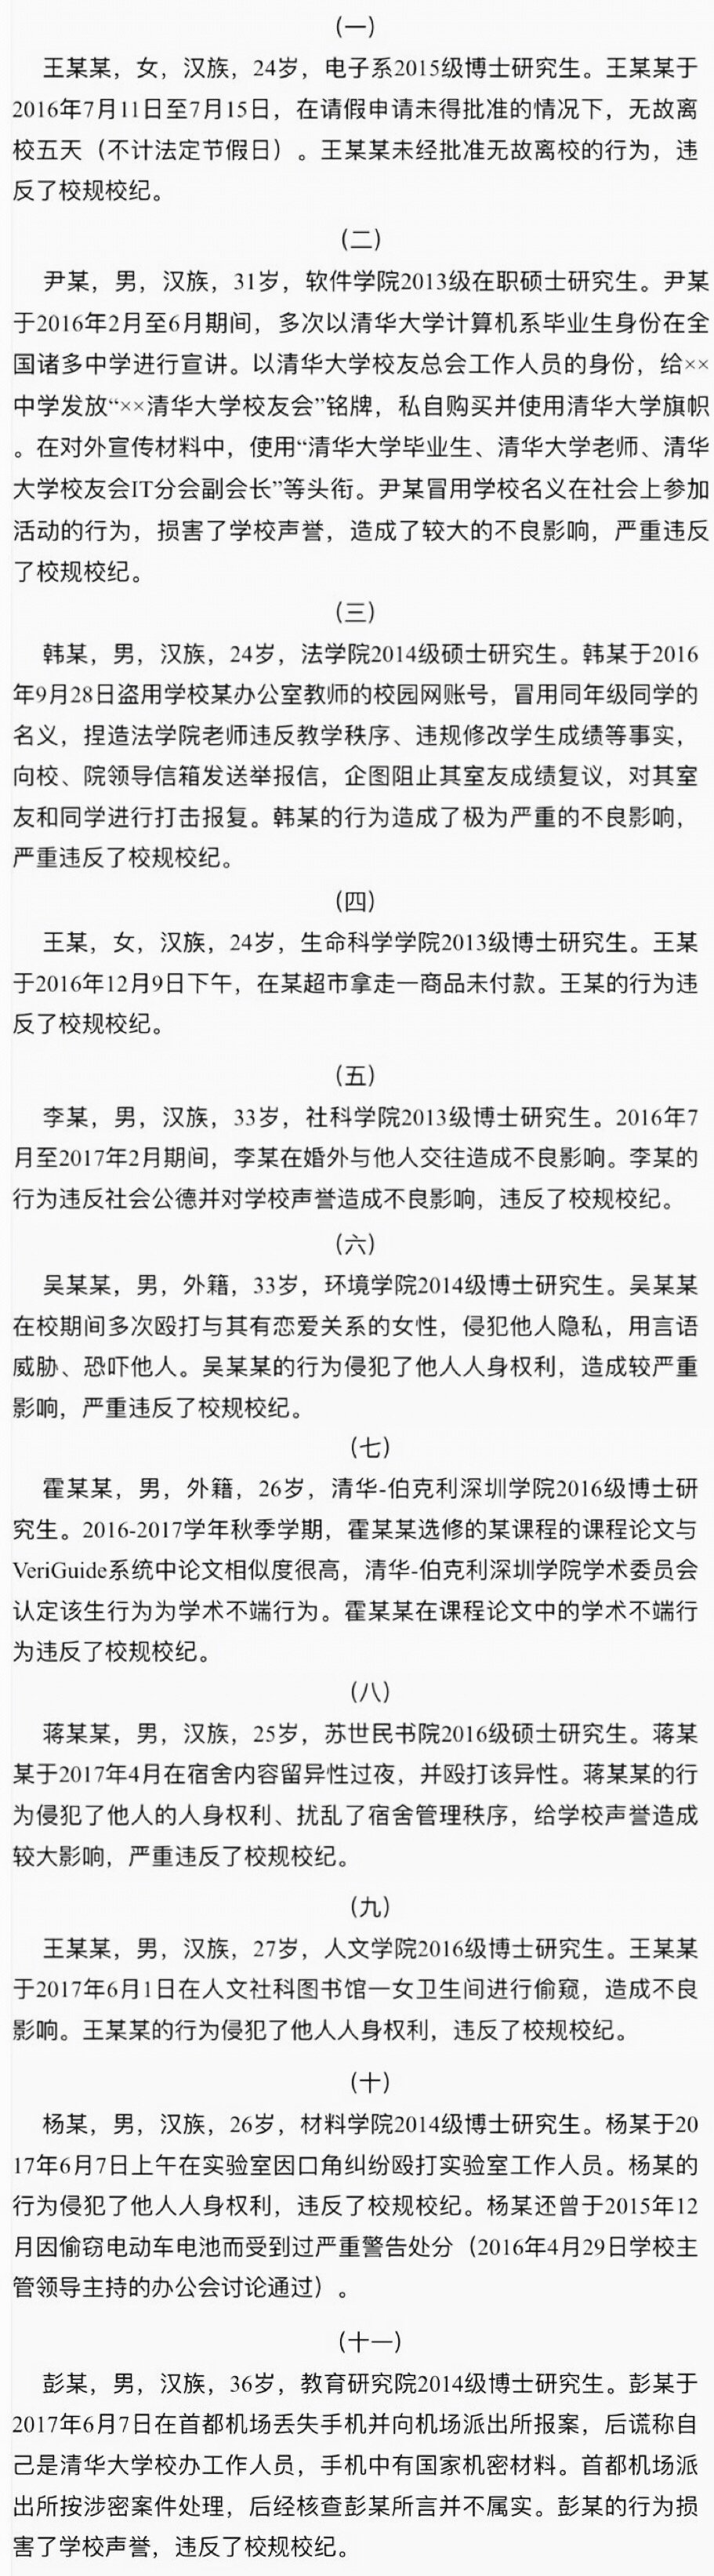 清华大学11名研究生被处分，涉婚外情、偷窥女厕等